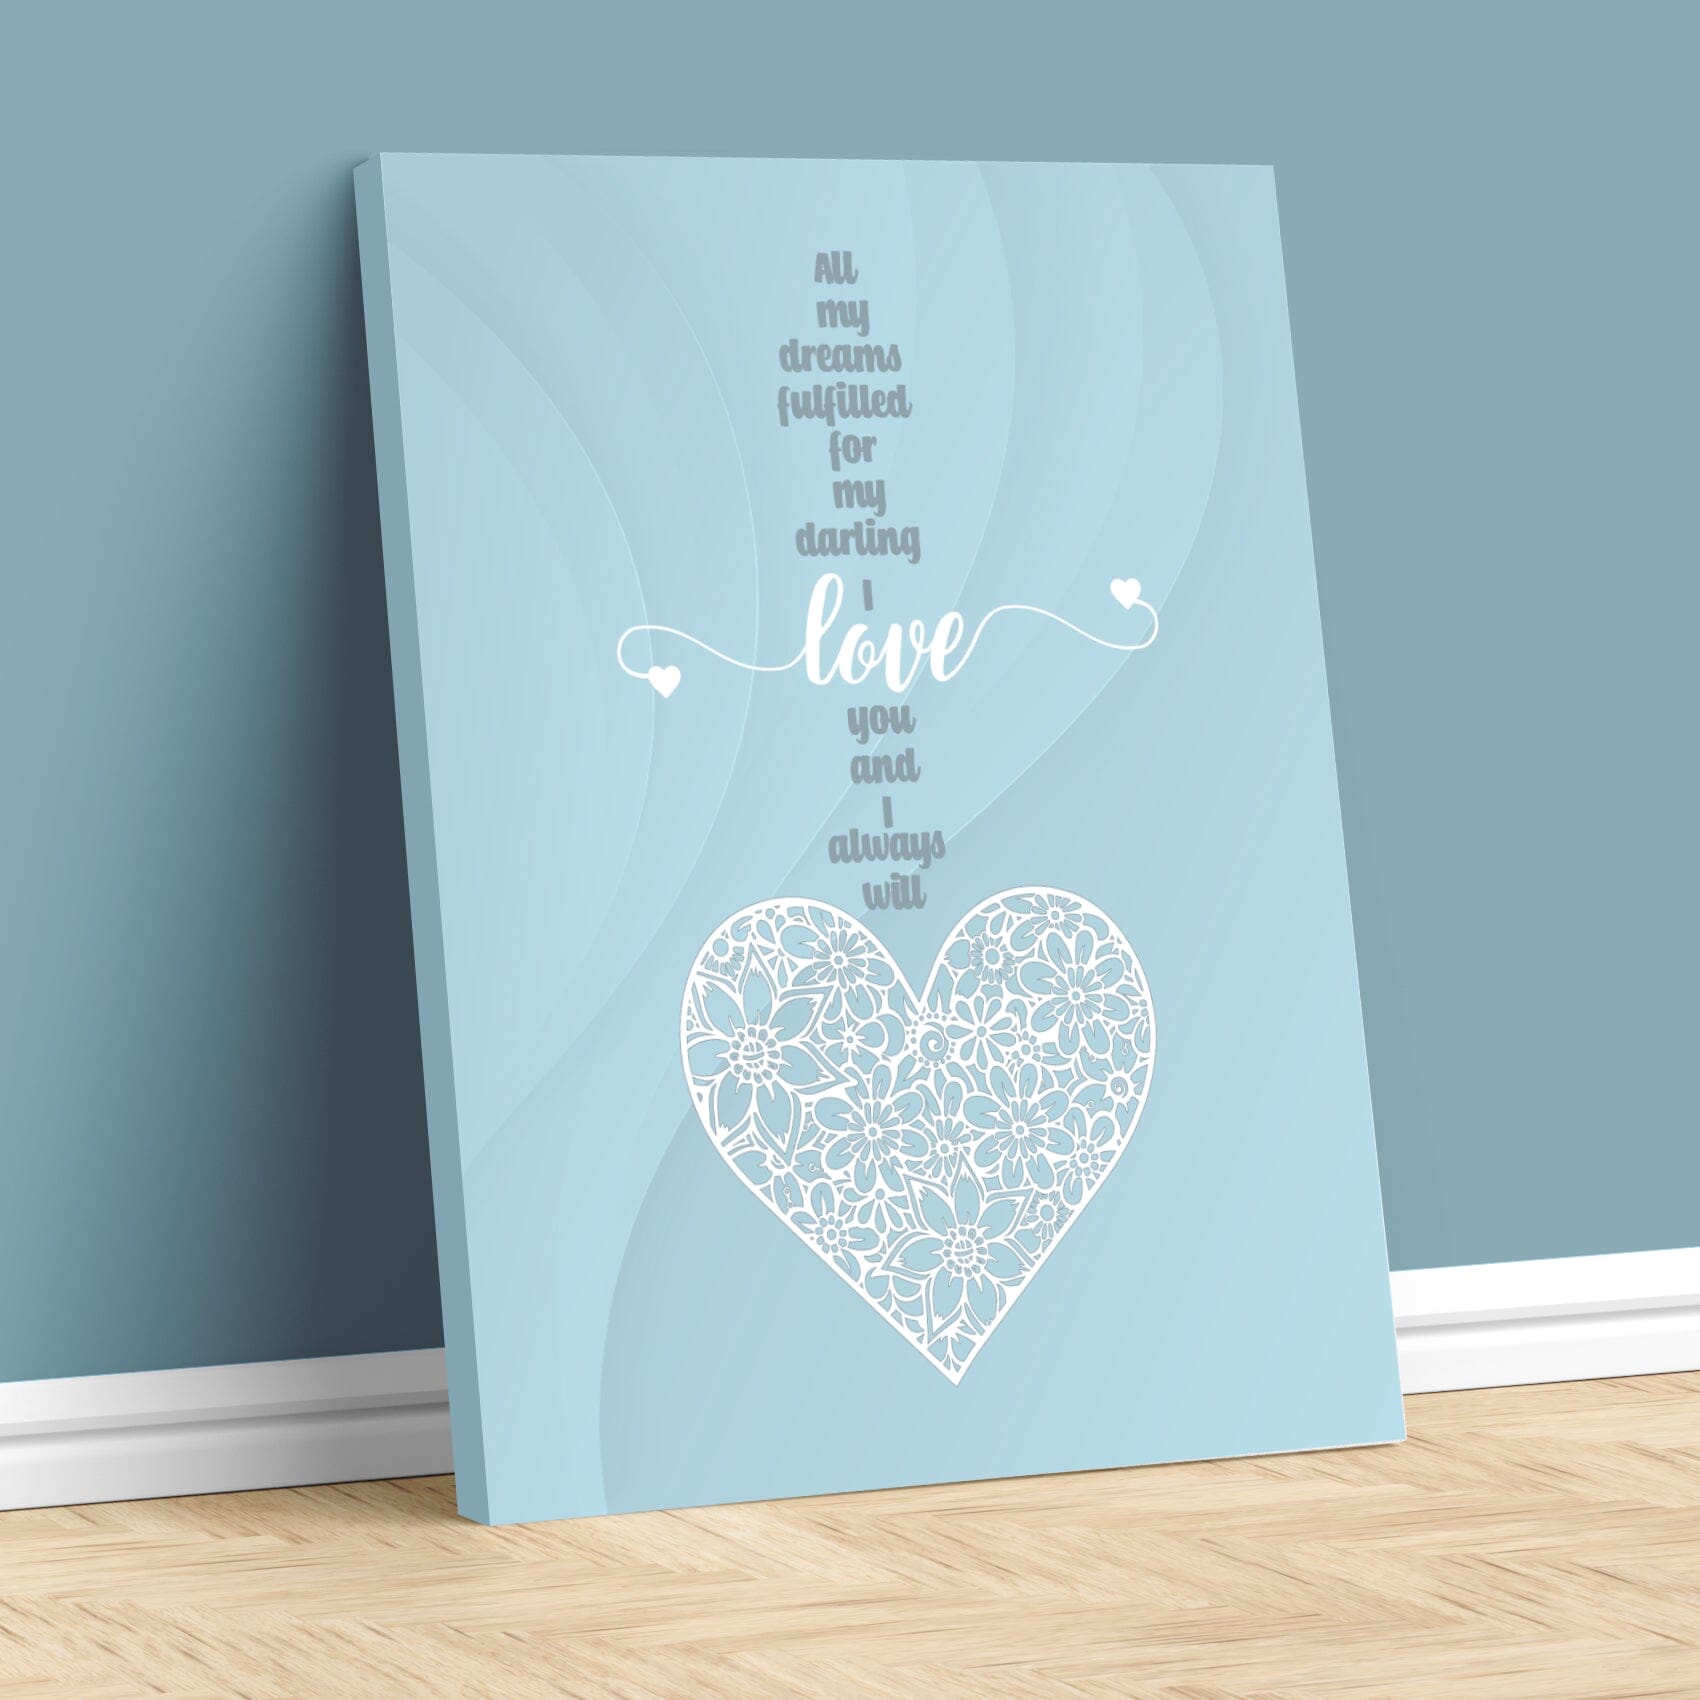 Love Me Tender by Elvis Presley - Wedding Song Lyric Print Song Lyrics Art Song Lyrics Art 11x14 Canvas Wrap 